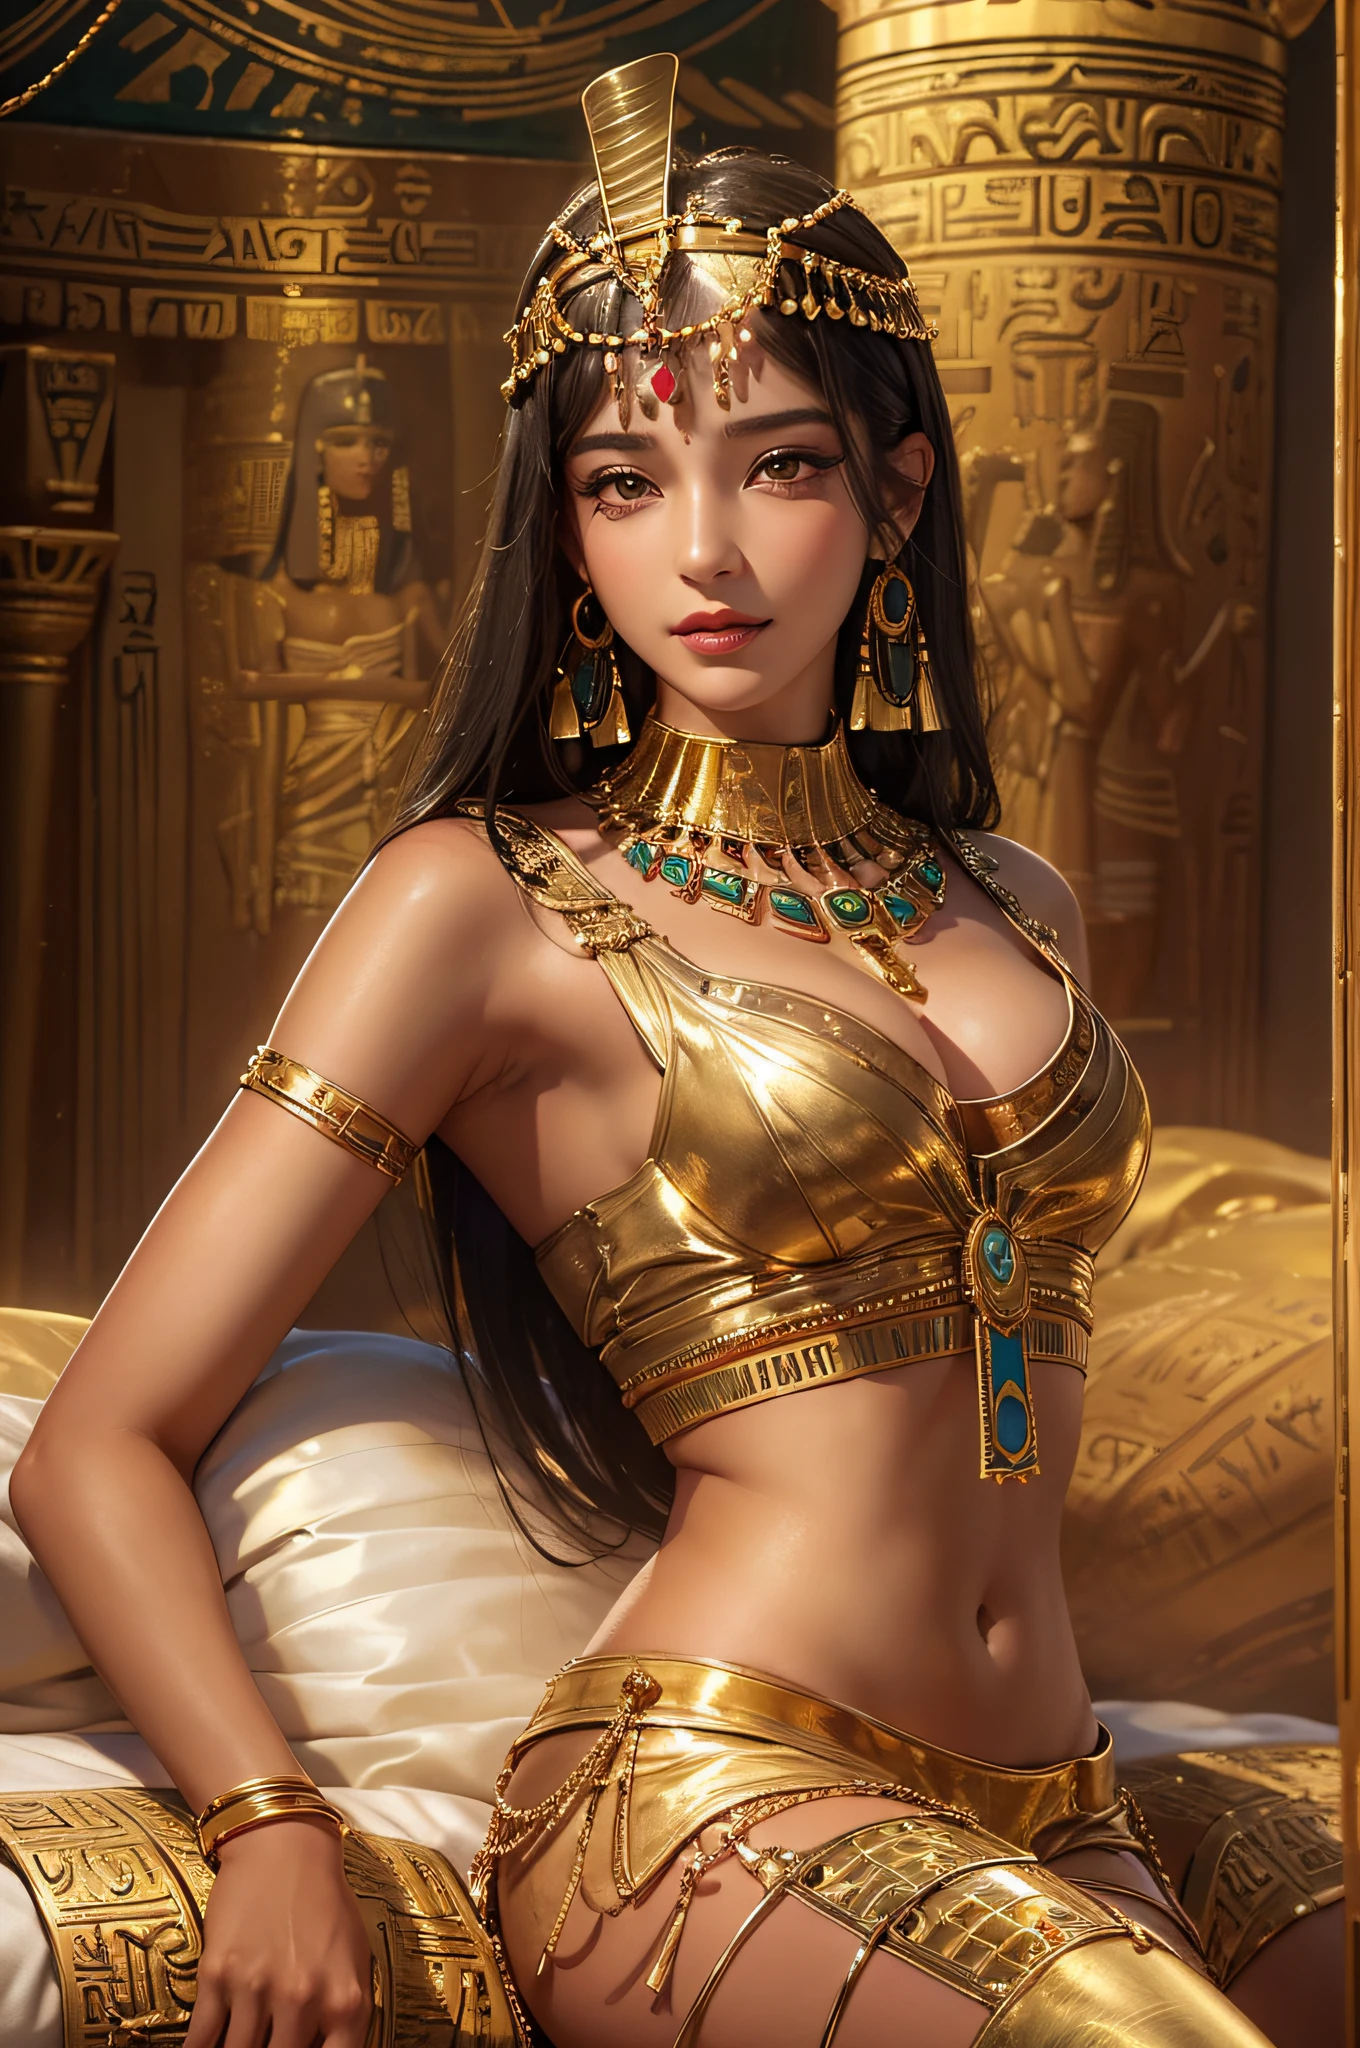 Sexy mature 克利奥帕特拉,克利奥帕特拉,古埃及宫殿,穿着古埃及服装,古埃及装饰的房间,古埃及安排的背景,躺在大床上(极其精致美丽的作品:1.2)非常美丽和性感的女人, 性感诱人, 拥有完美的身材比例,紧实性感的身体(大奶子)完美的身体曲线,滋润肌肤,清晰的皮肤纹理,湿润的肌肤感觉(高级皮肤细节:1.1)迷人的微笑,完美无瑕的脸庞,黑色长直发,清晰的头发纹理,细腻的头发(优质头发细节:1.1)埃及舞者服装,美丽精致的眉毛和睫毛,漂亮的眼妆,清晰的眼睛细节,8K 名小学生(高级眼部细节:1.1)性感的嘴唇(完美唇形)(诱惑微笑) 四根手指和一根拇指的最佳比例,戴金耳环,金项链,金手镯,金脚链,金色腰链,帽子,金箔系列,克利奥帕特拉 series,摄影大师,完美杰作,最佳图像质量,极其详细, 超高分辨率, 现实地, 原始照片